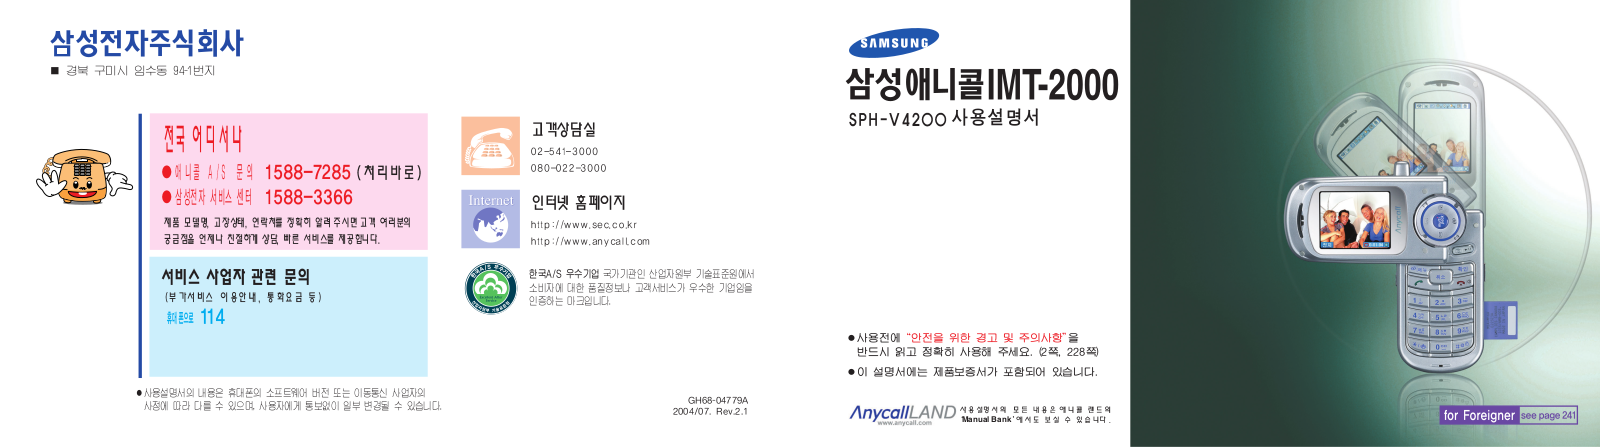 Samsung SPH-V4200 User Manual